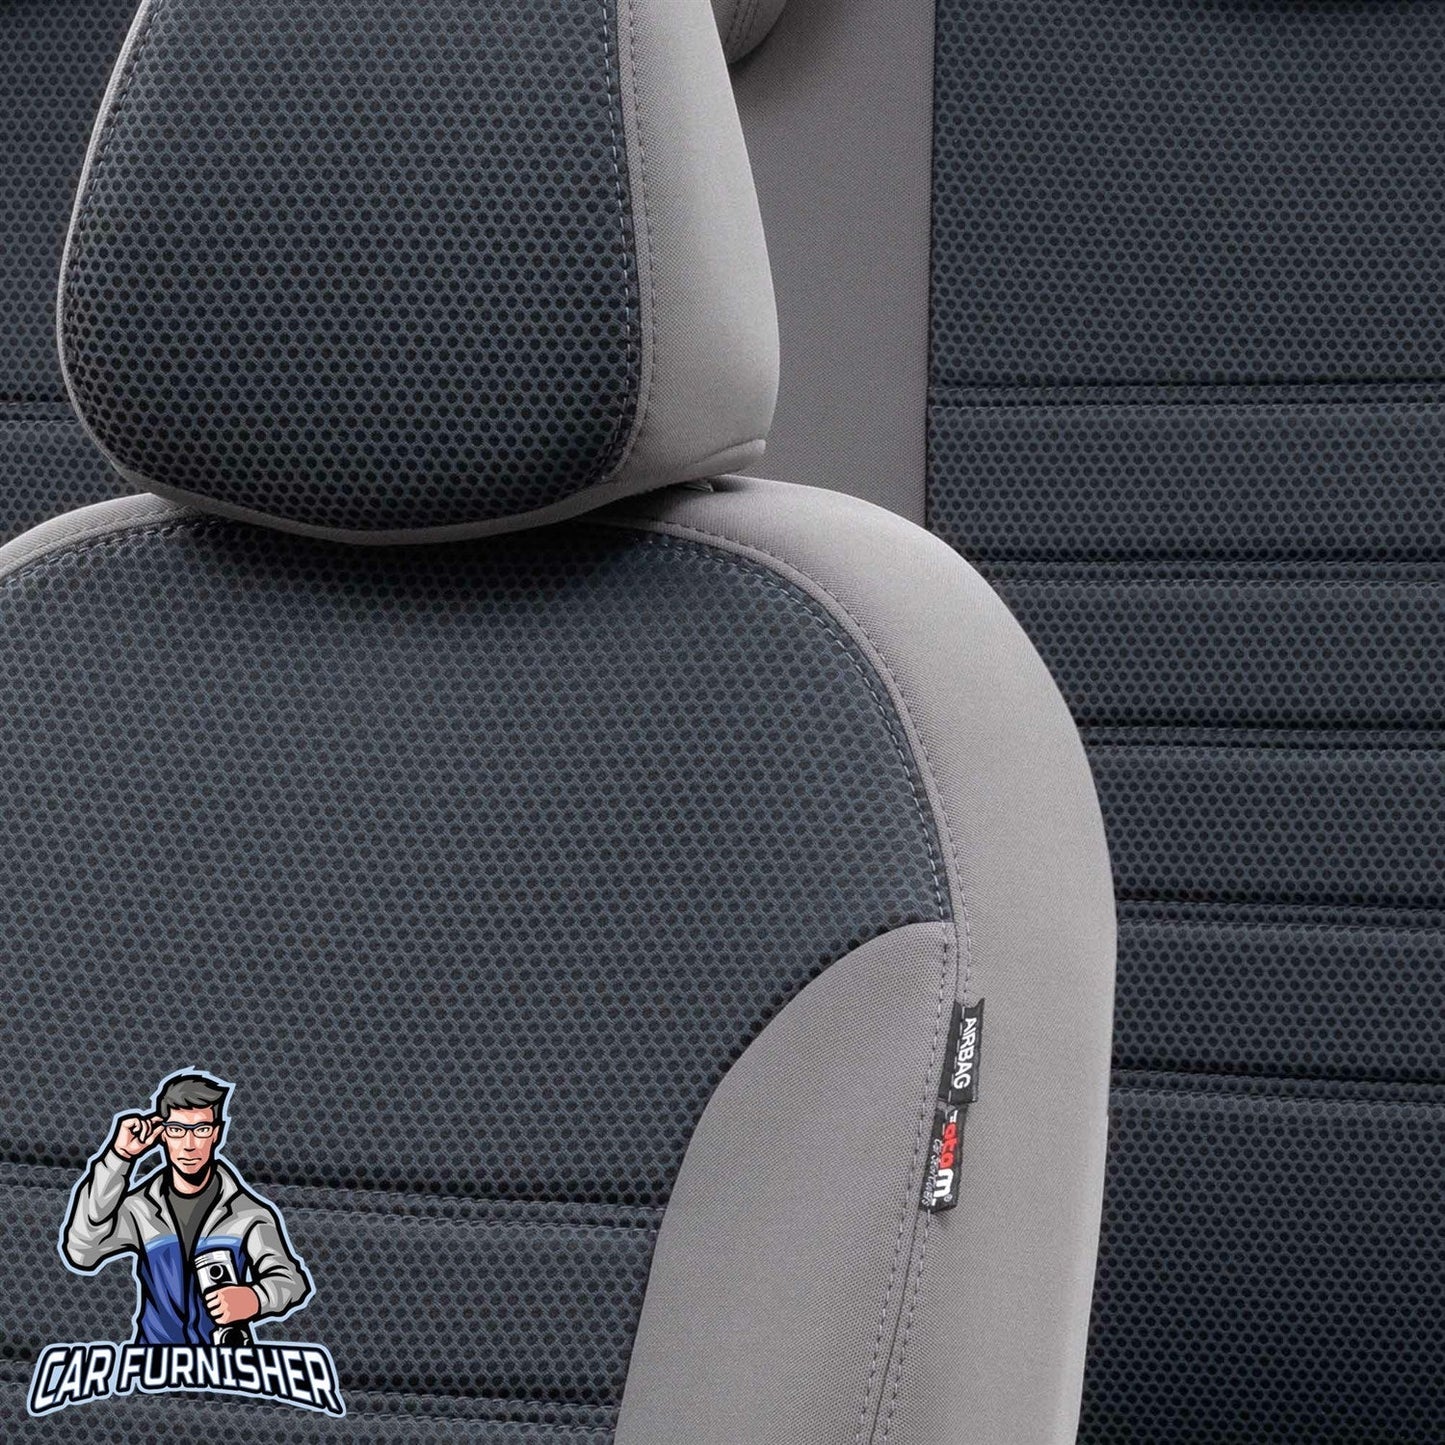 Skoda Scala Seat Covers Original Jacquard Design Smoked Jacquard Fabric